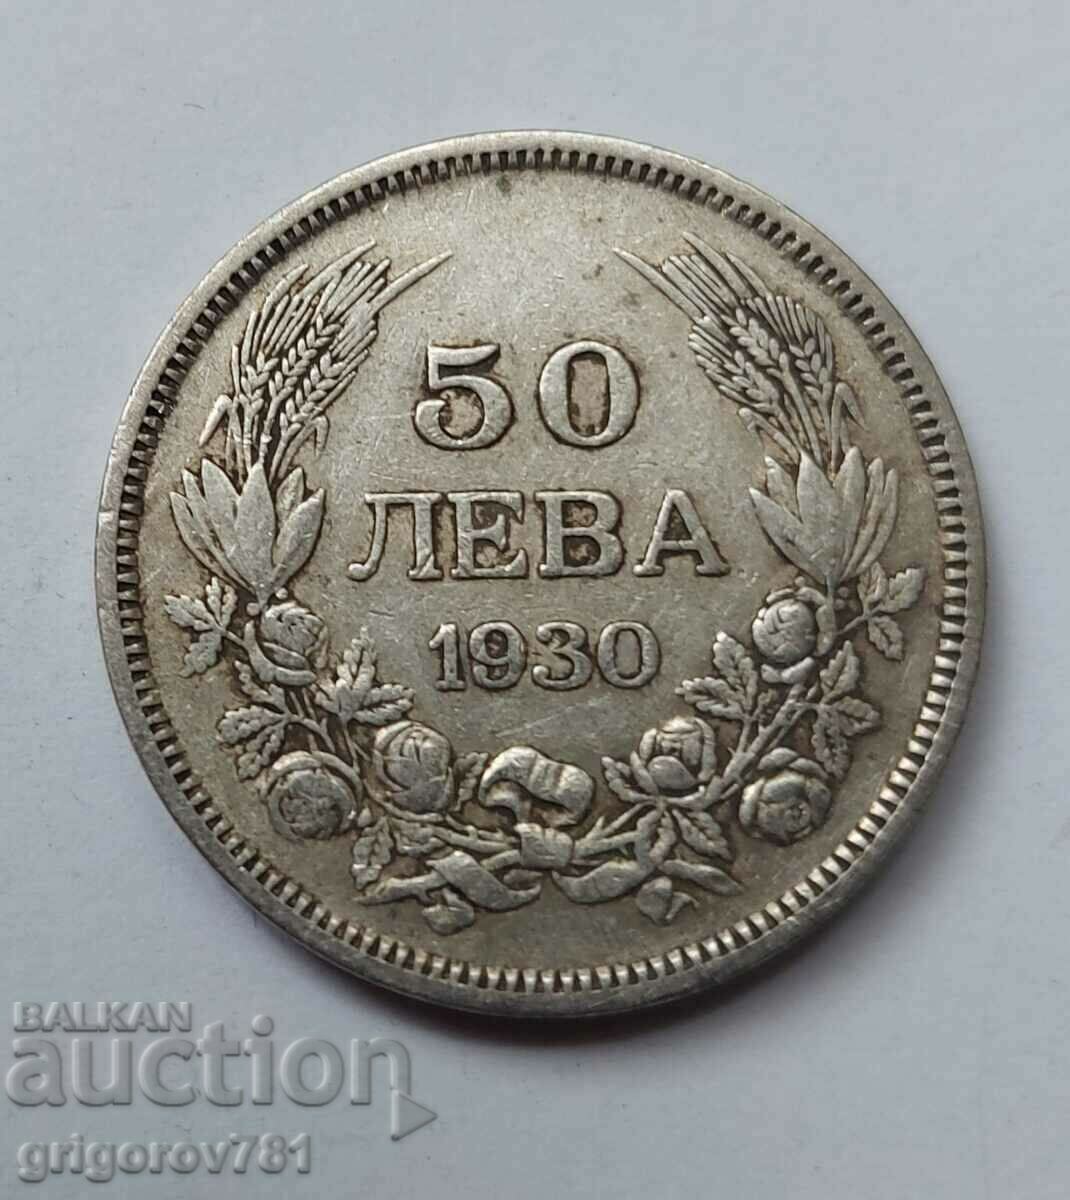 50 leva argint Bulgaria 1930 - monedă de argint #62